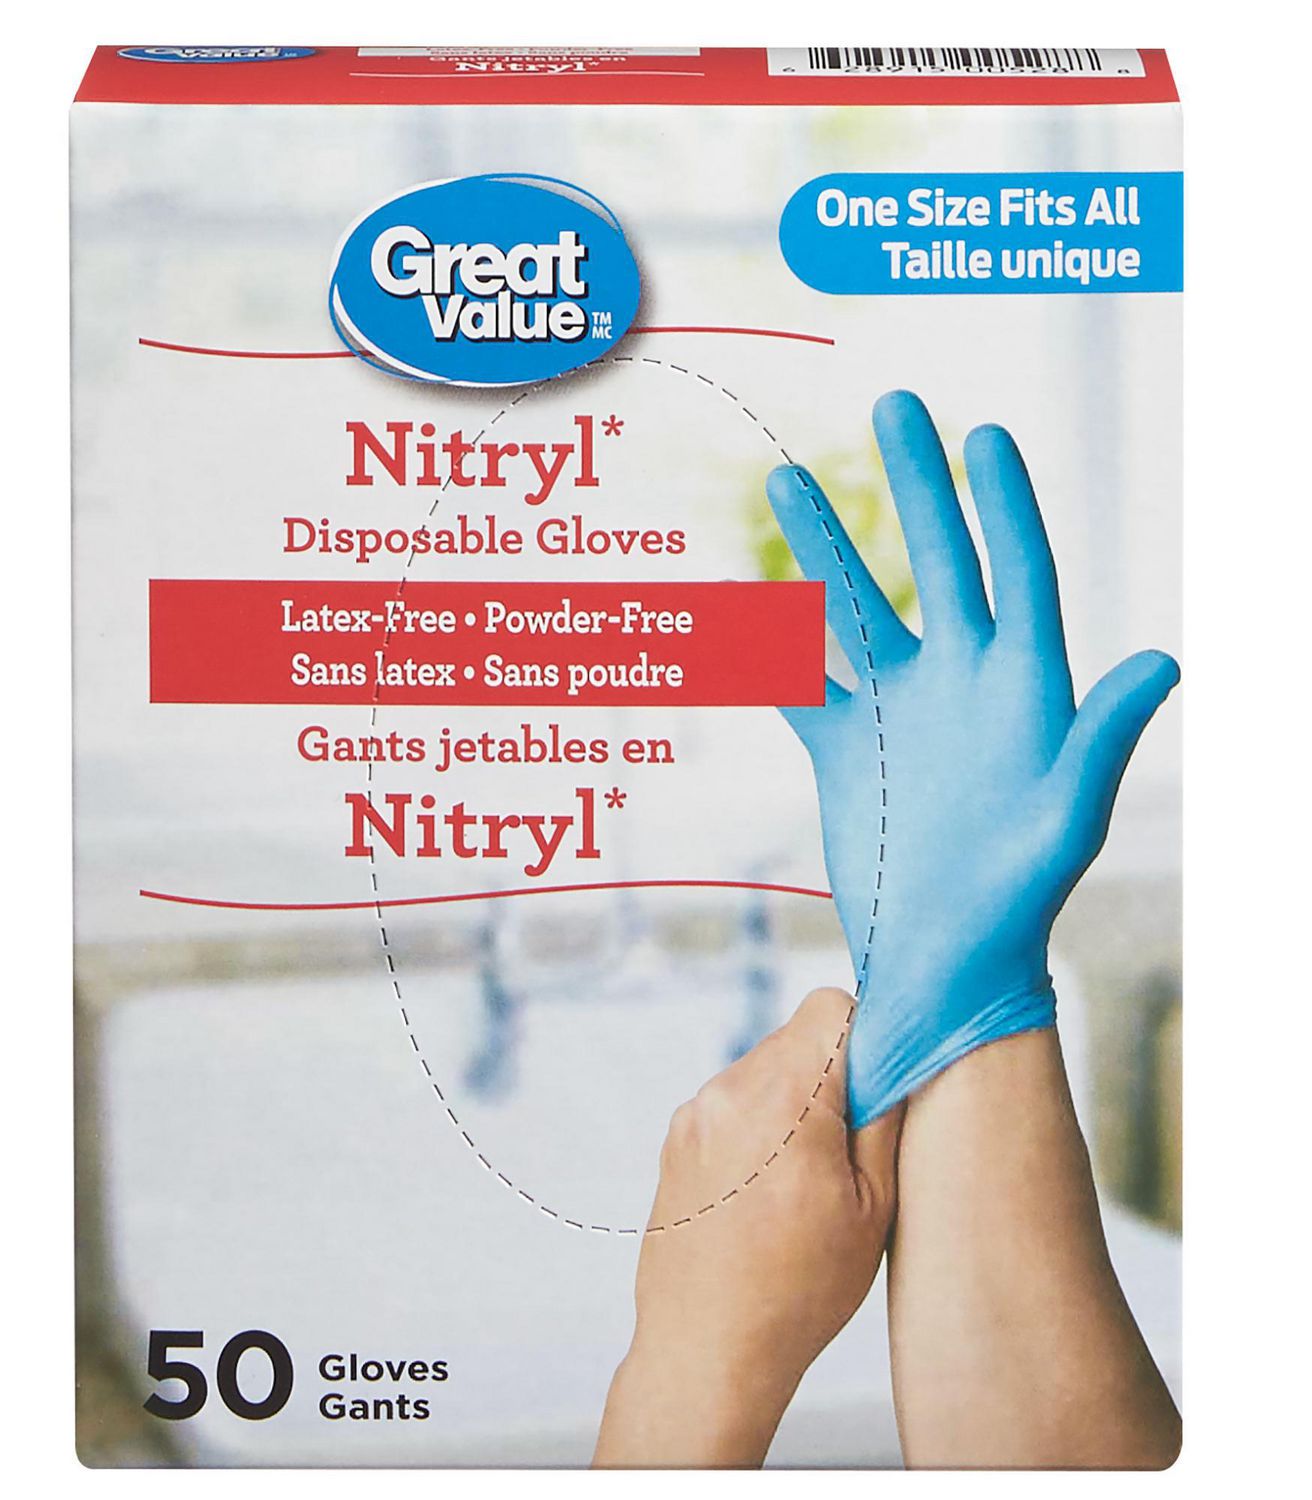 Gants jetables en nitryl de Great Value 50 gants, taille unique